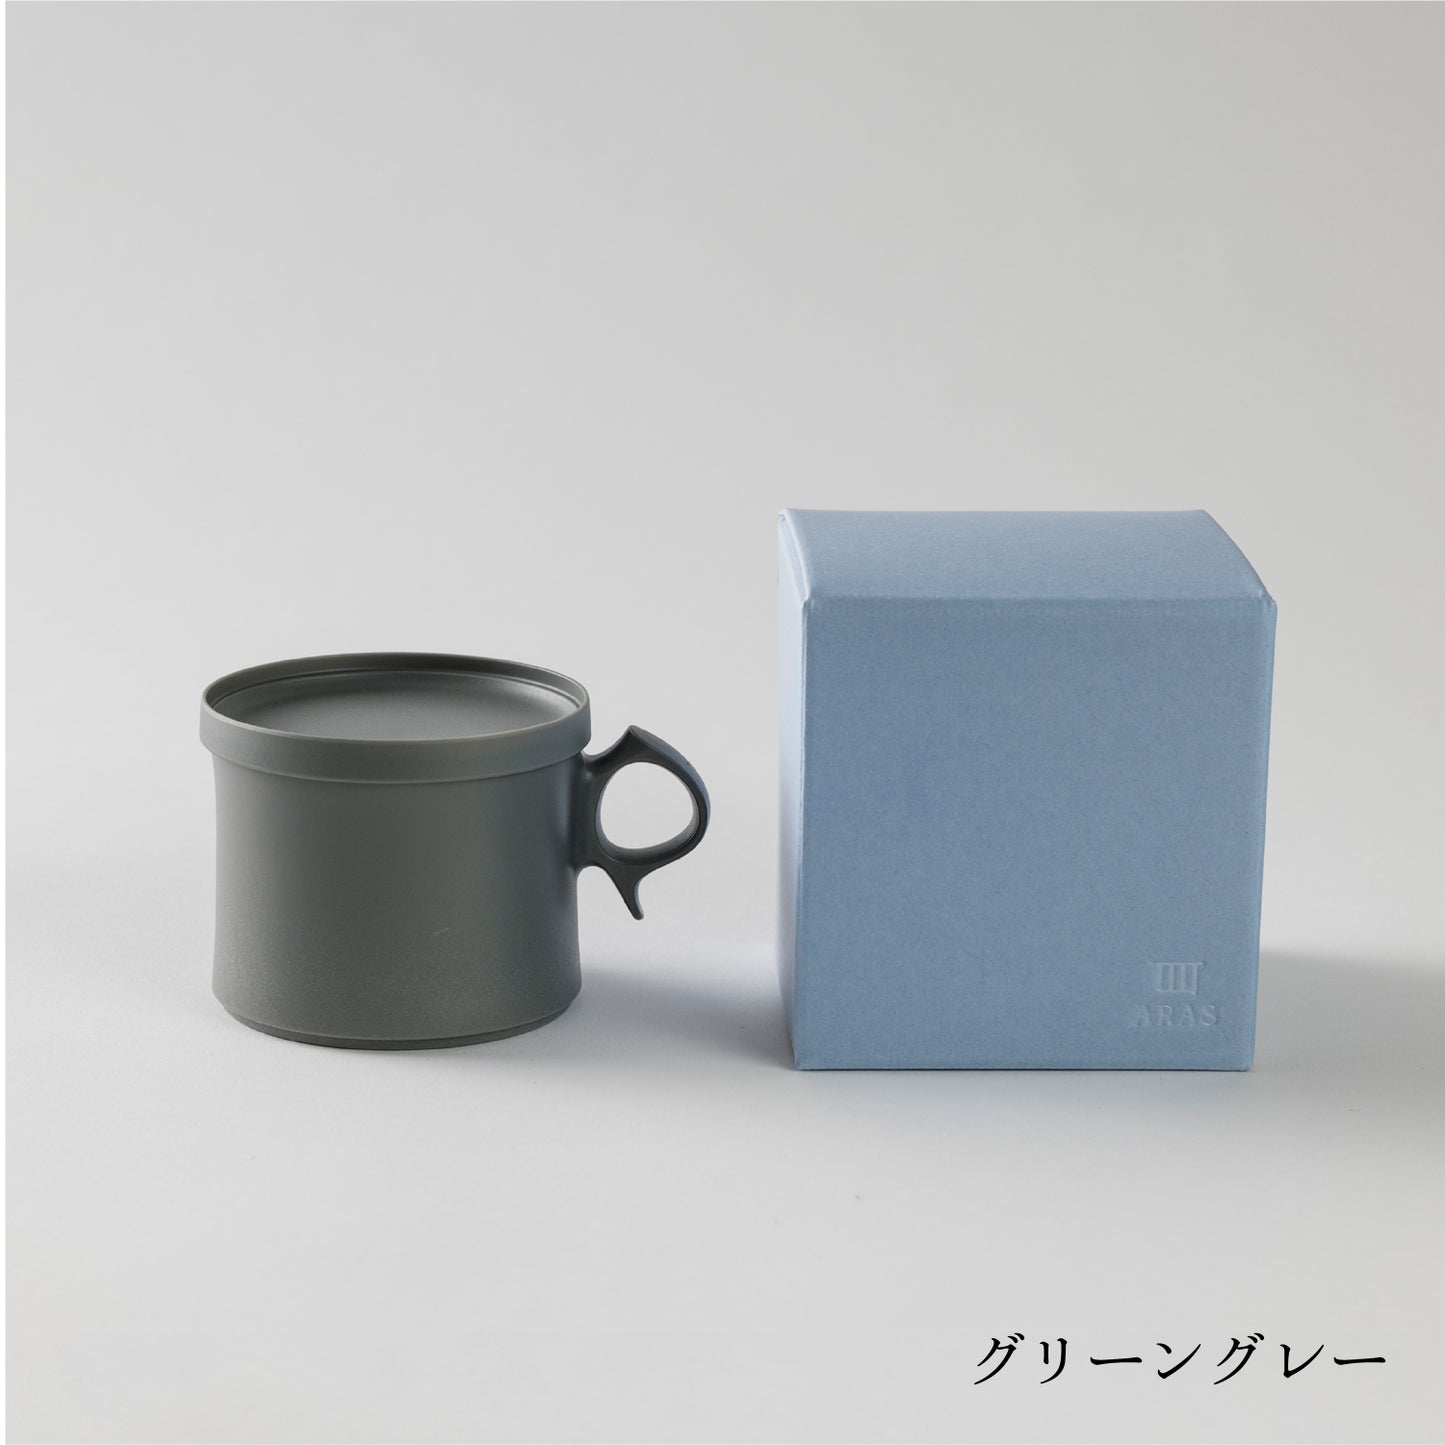 Small mug (210 ml)